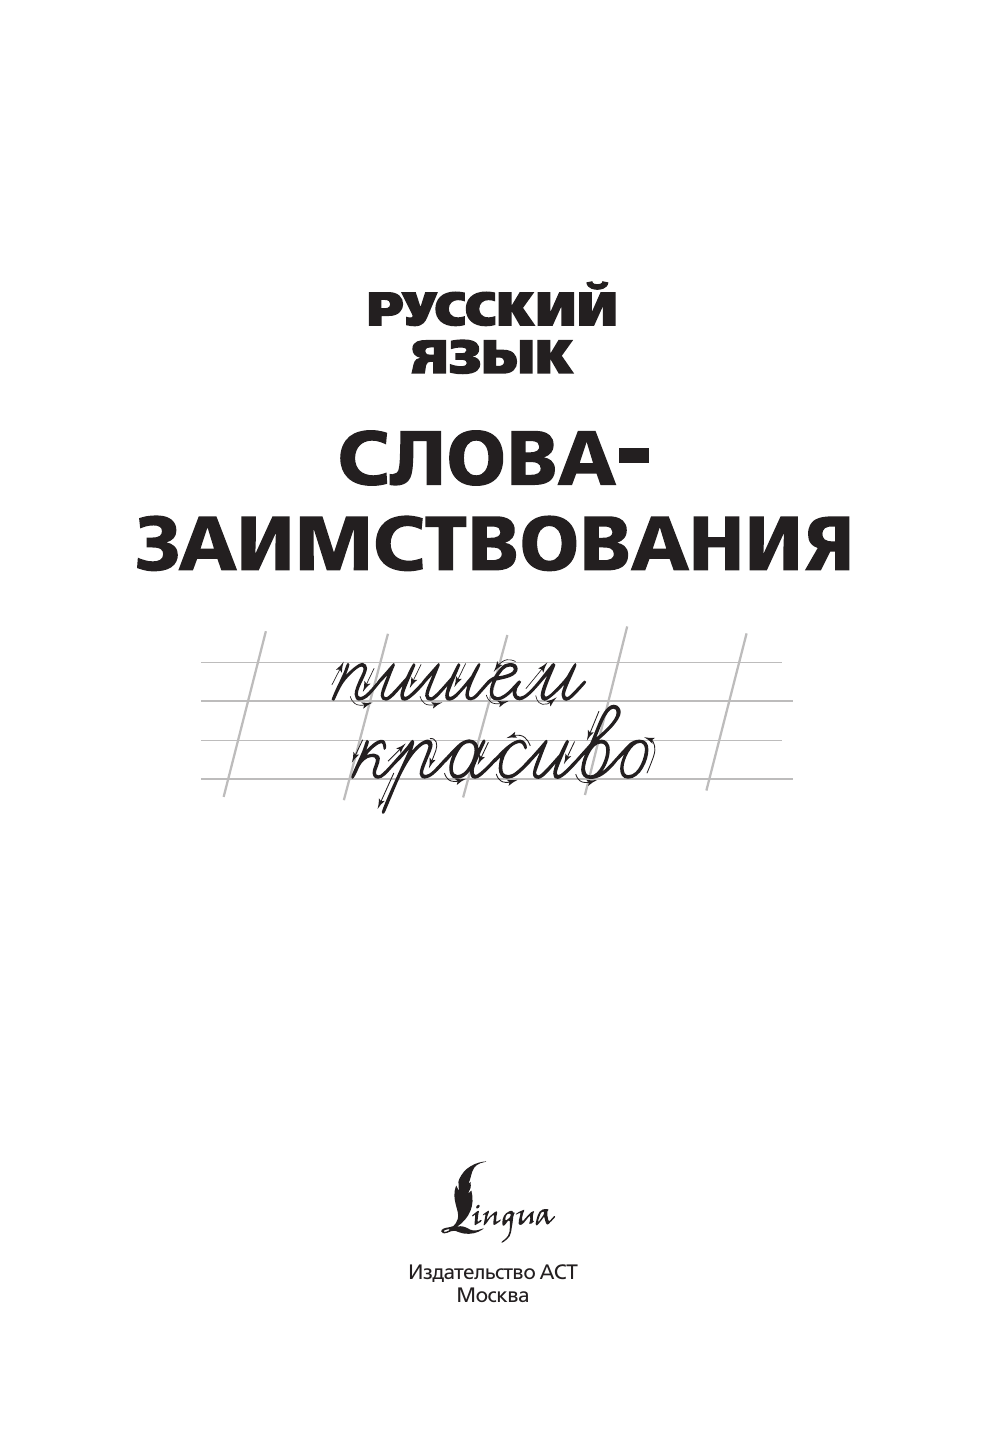  Русский язык. Пишем красиво слова-заимствования - страница 1